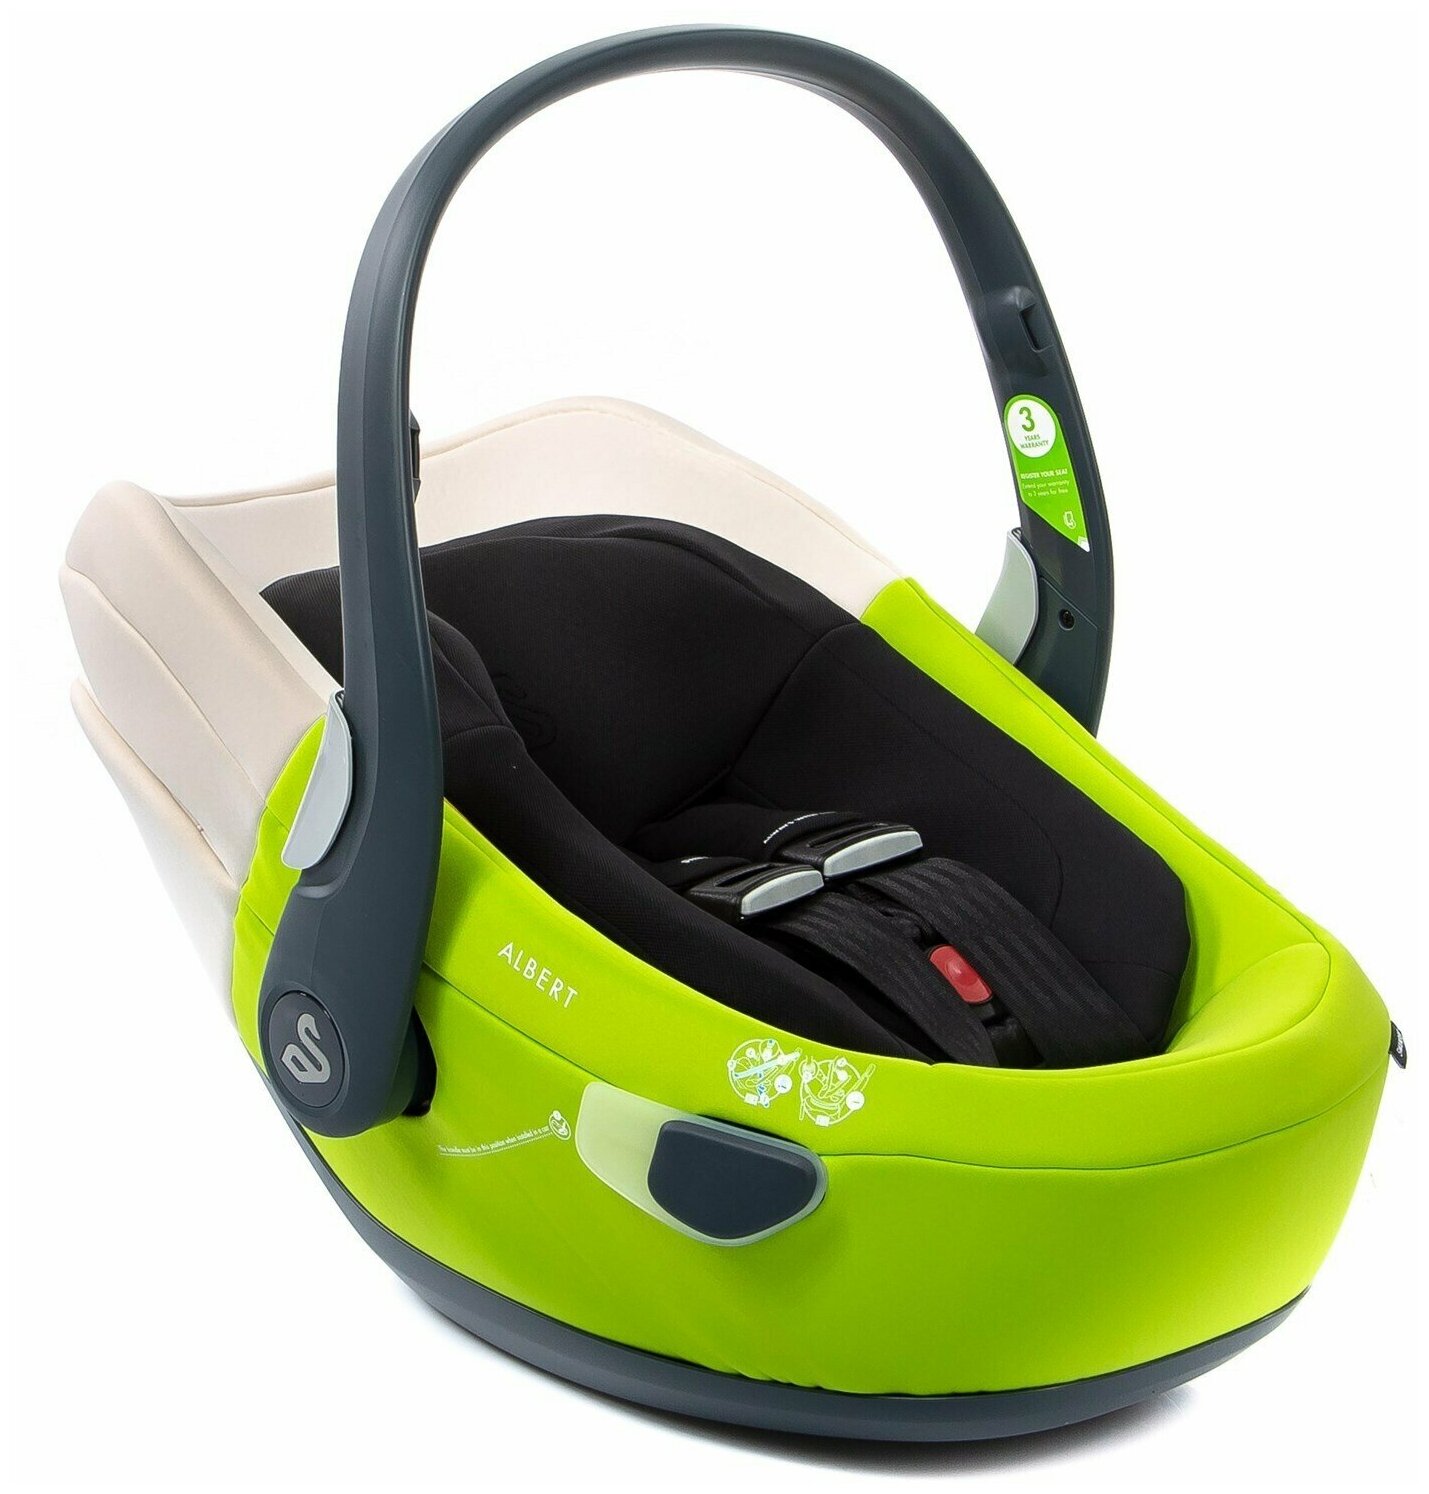 Автолюлька Swandoo Albert i-Size без базы, для перевозки новорожденных малышей и детей весом от 0 до 13 кг, в цвете Lime Green & Coconut White